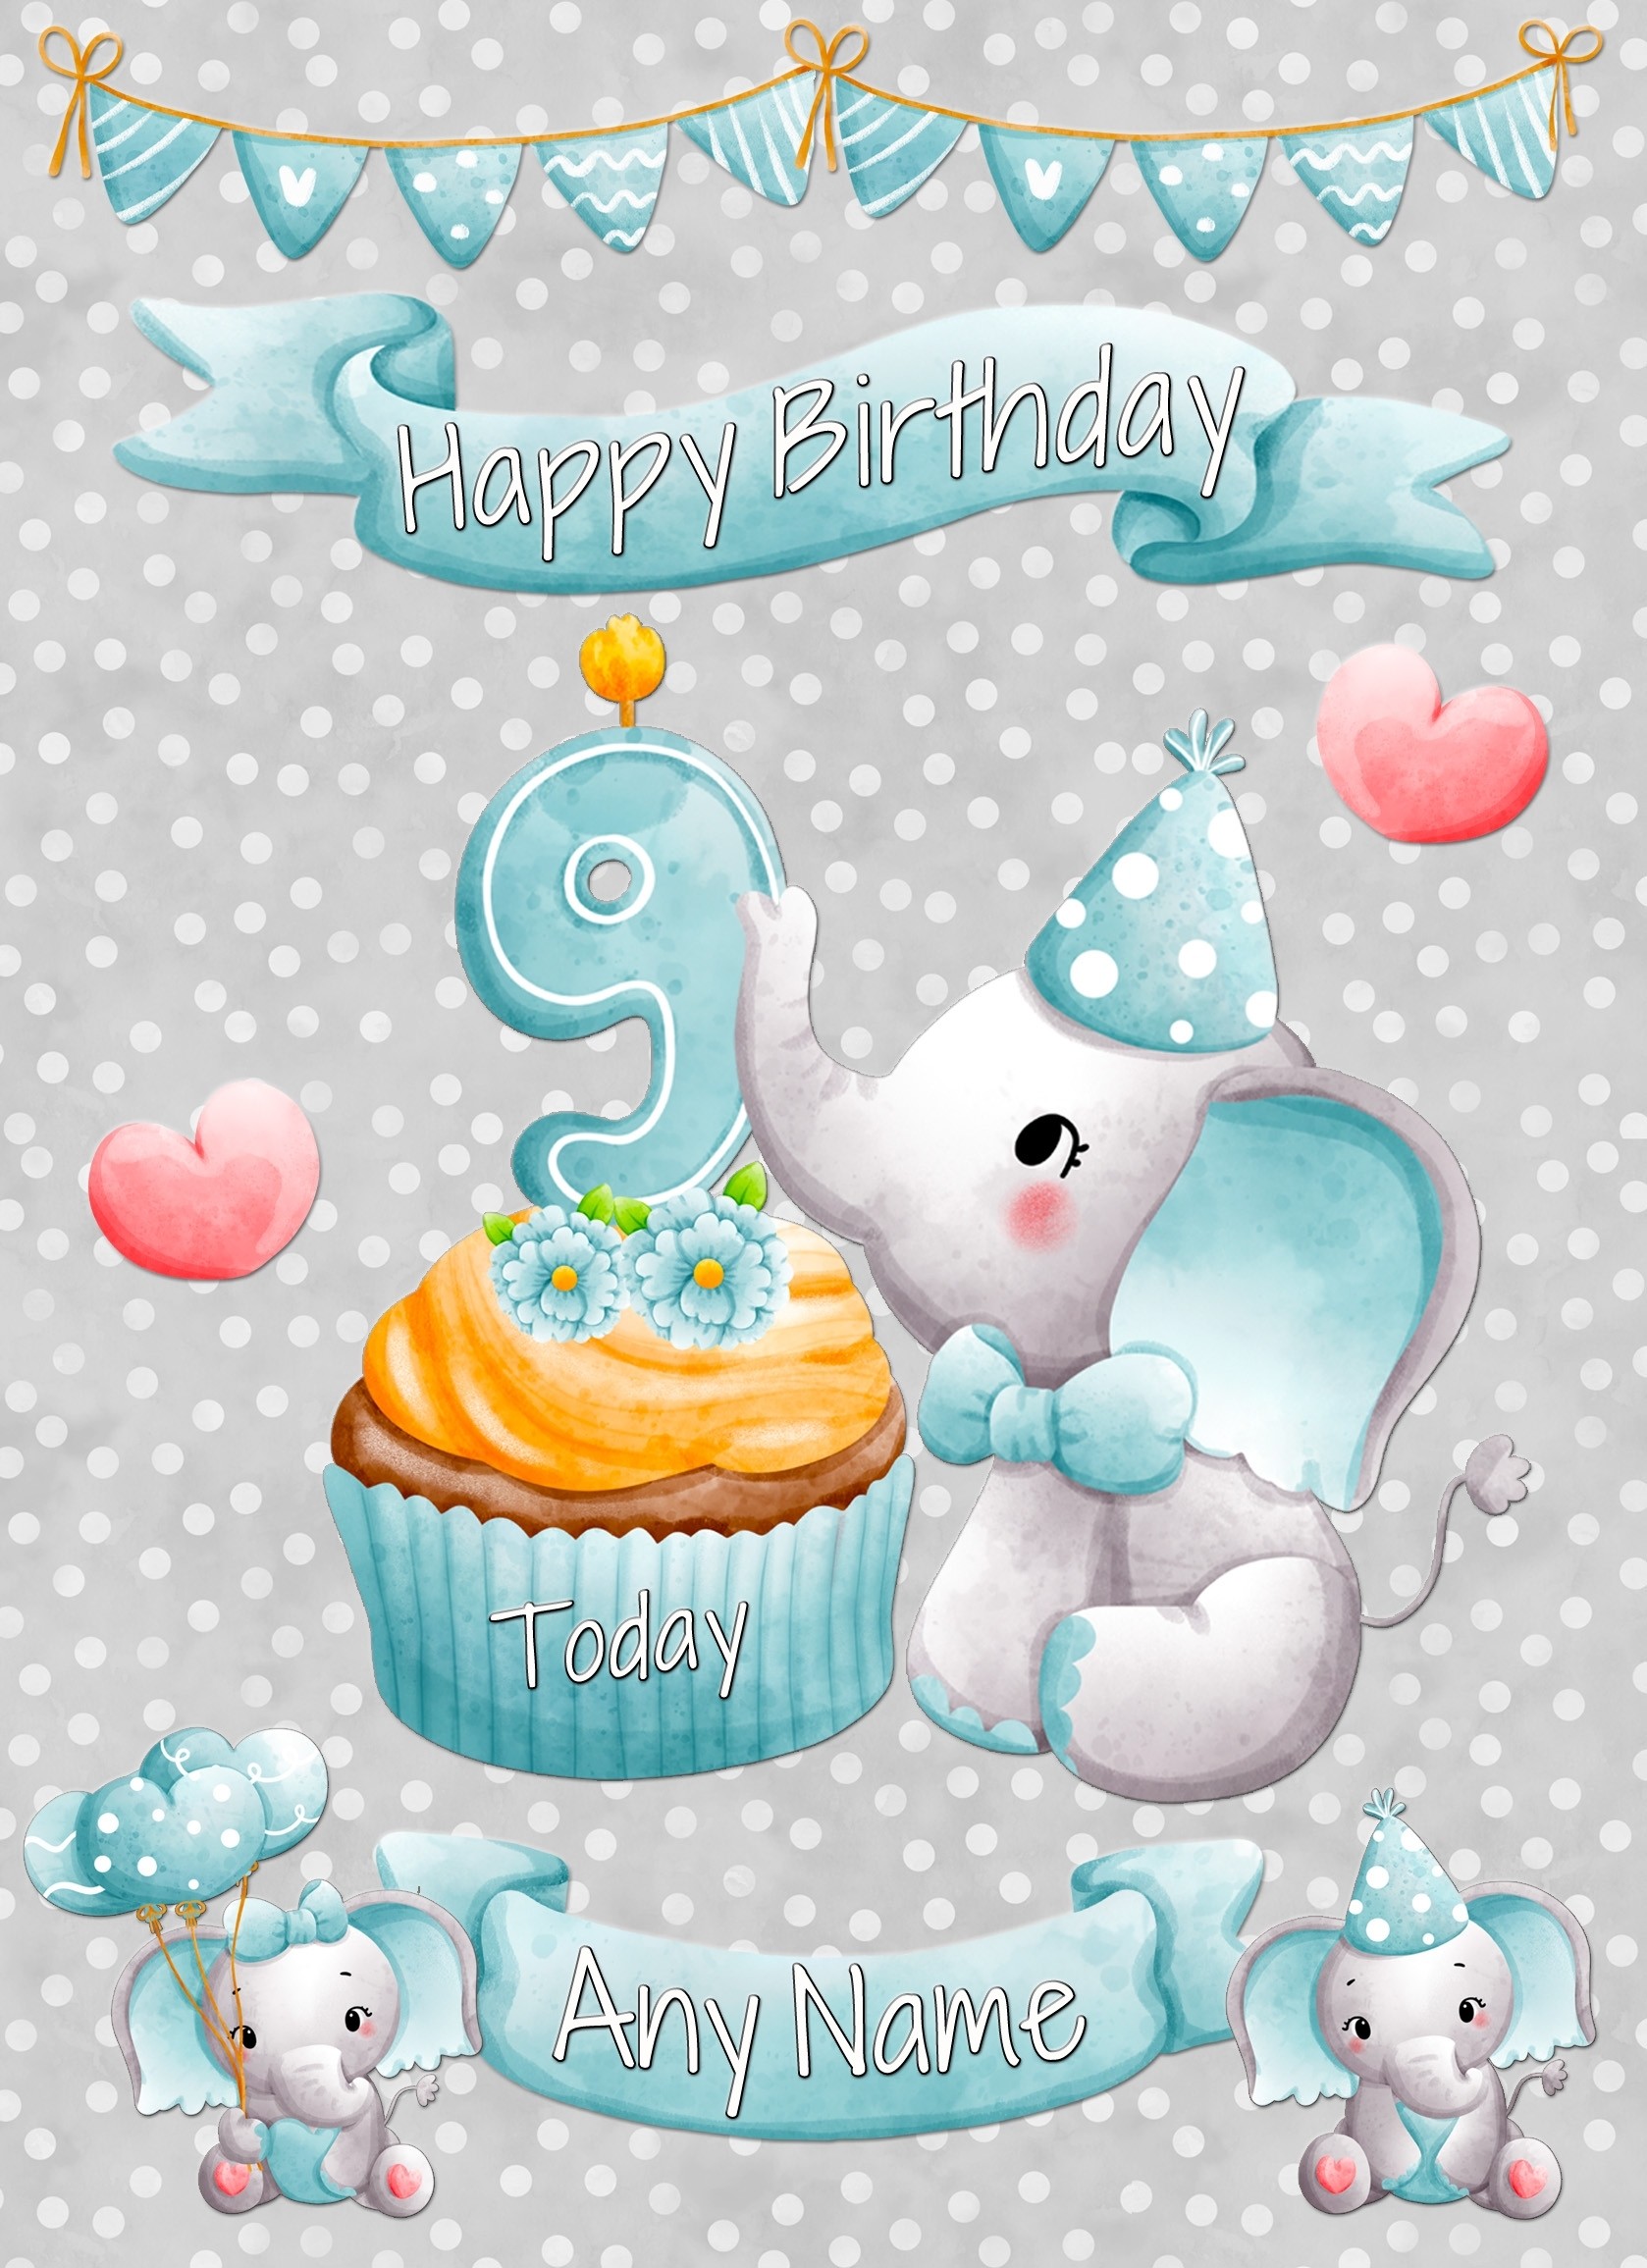 Personalised 9th Birthday Card (Grey Elephant)